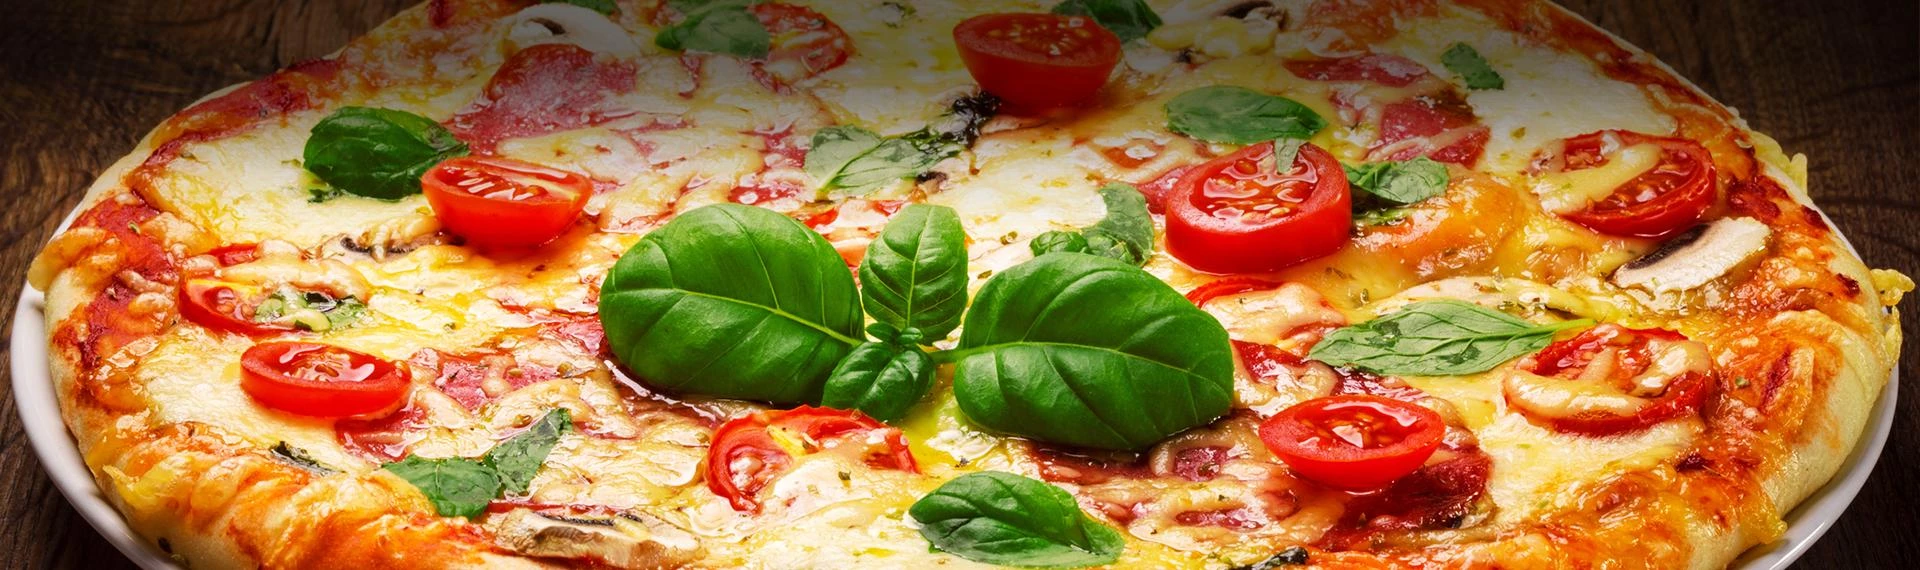 pizza z pomidorami i bazylią